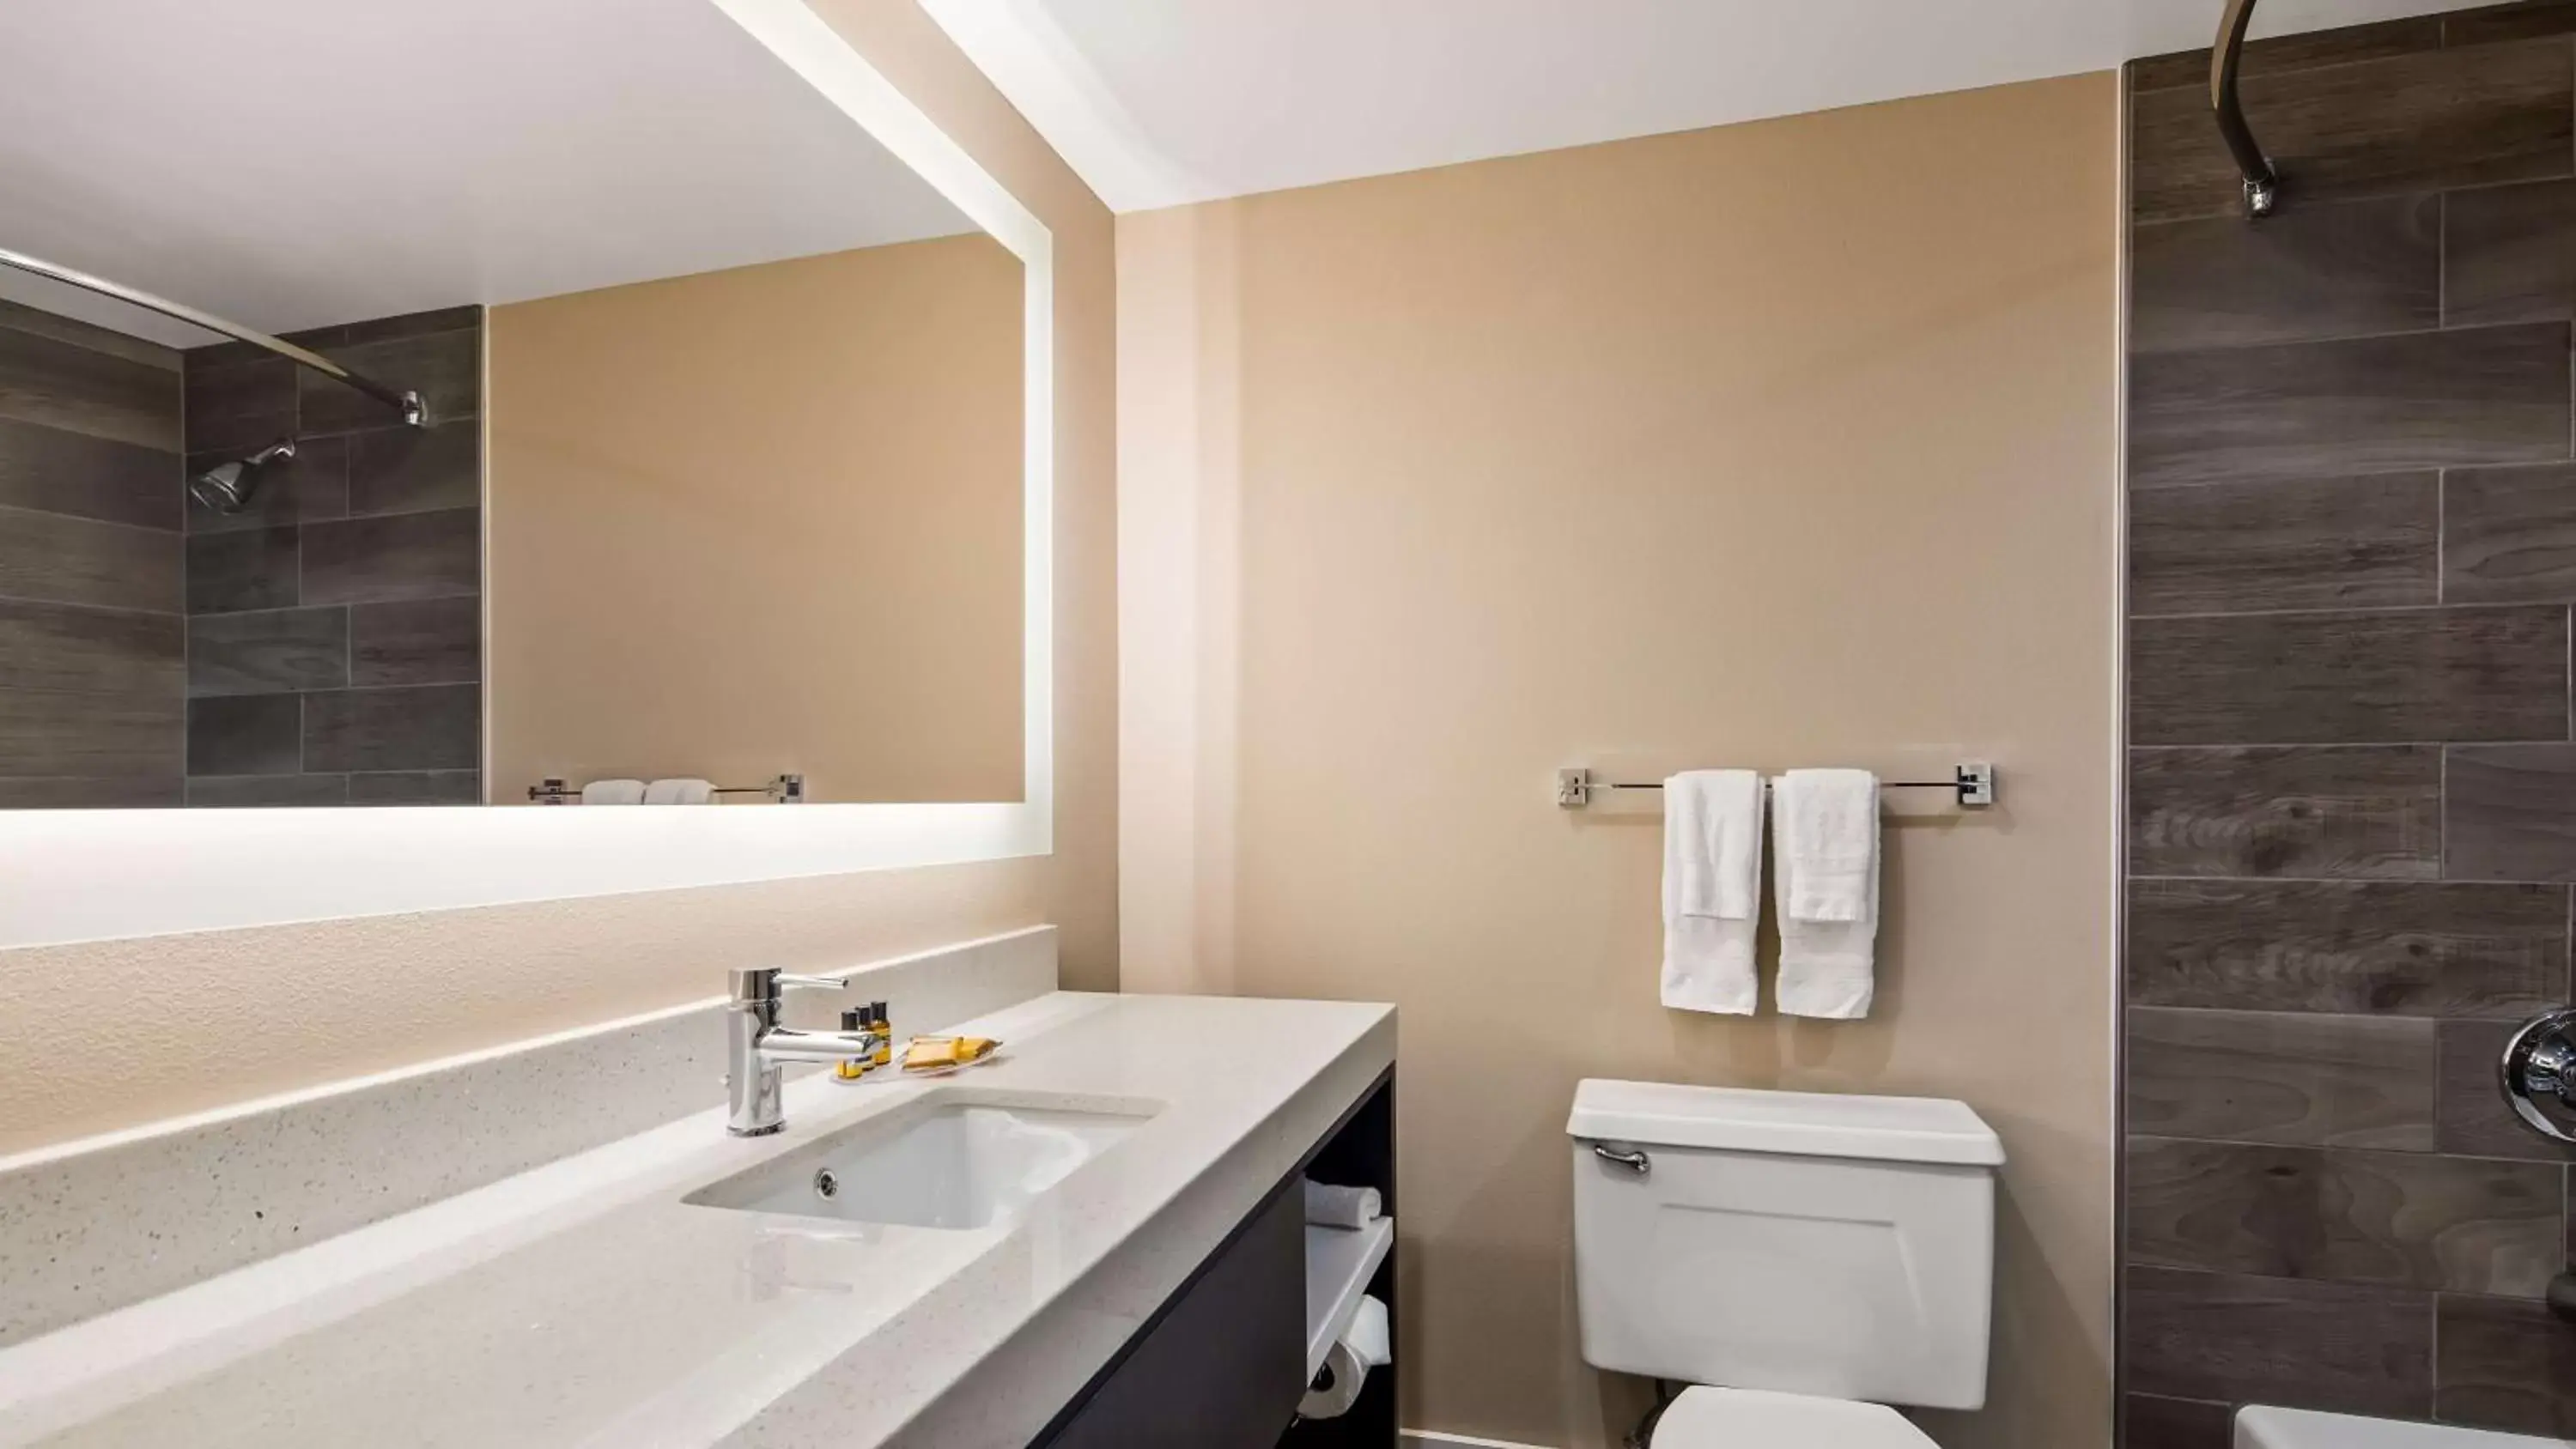 Bathroom in Best Western Plus Greenville I-385 Inn & Suites